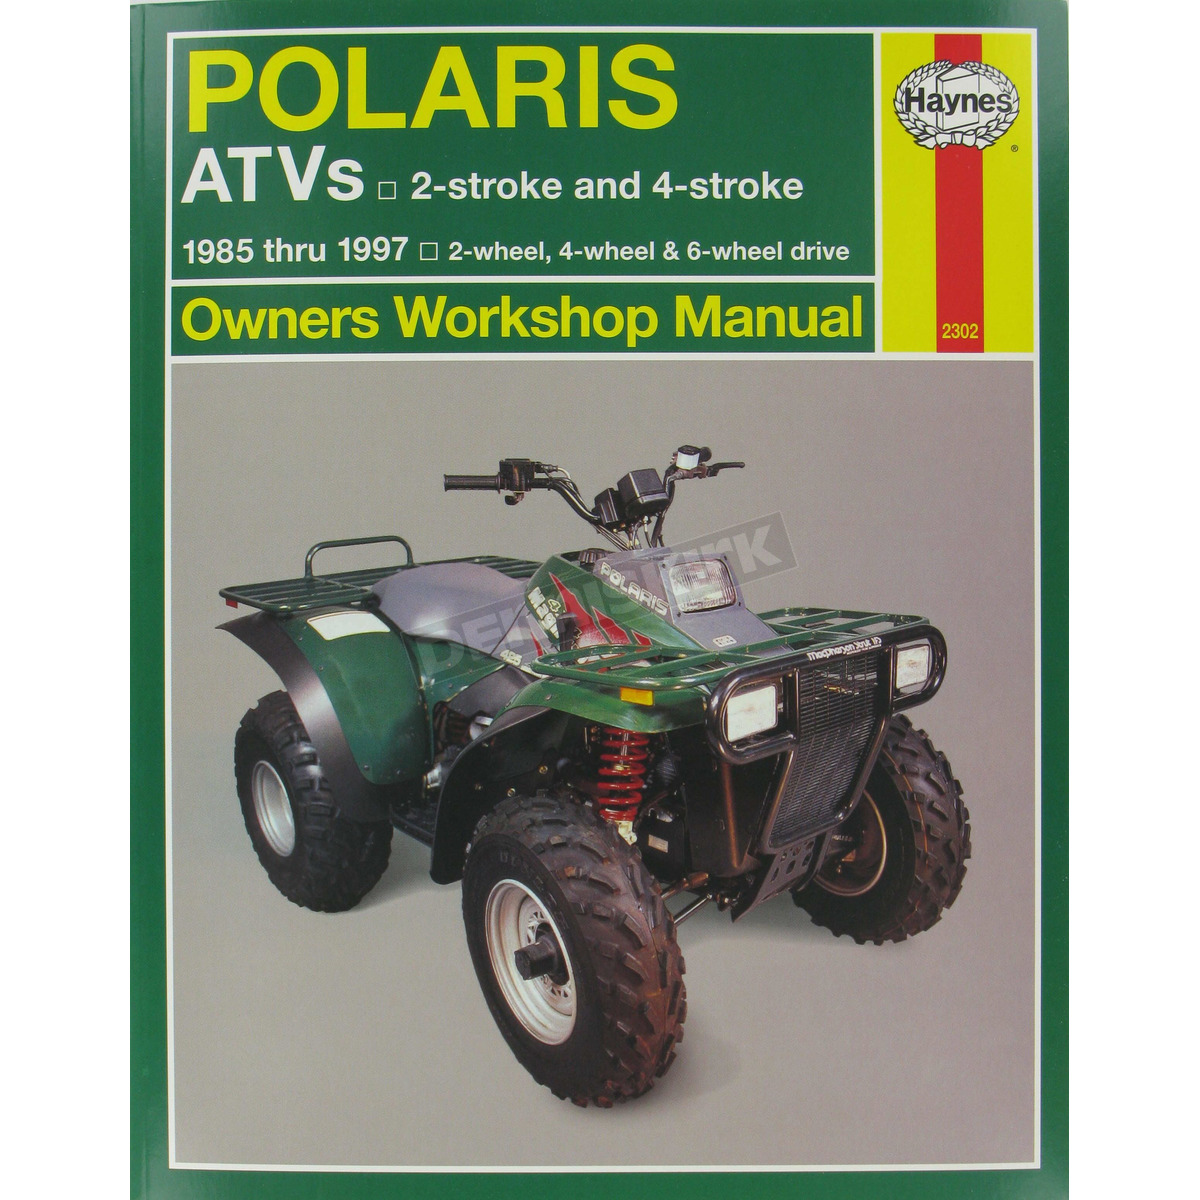 Haynes Polaris Repair Manual - 2302 | Dennis Kirk